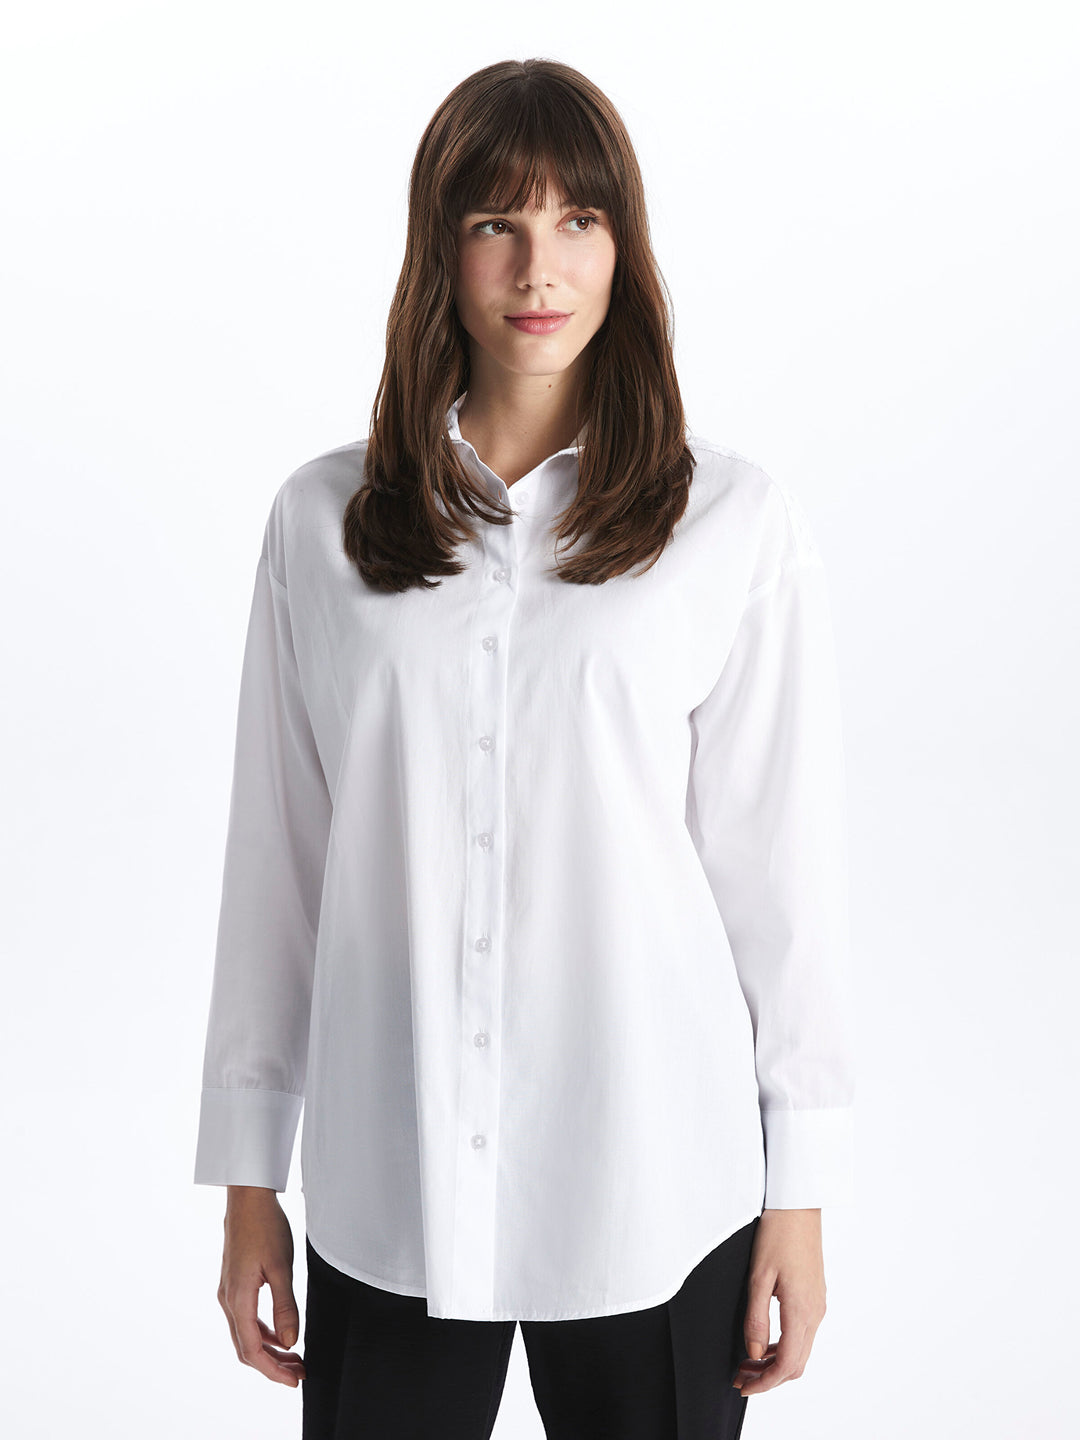 Self-Patterned Long Sleeve Oversize Women Shirt Tunic